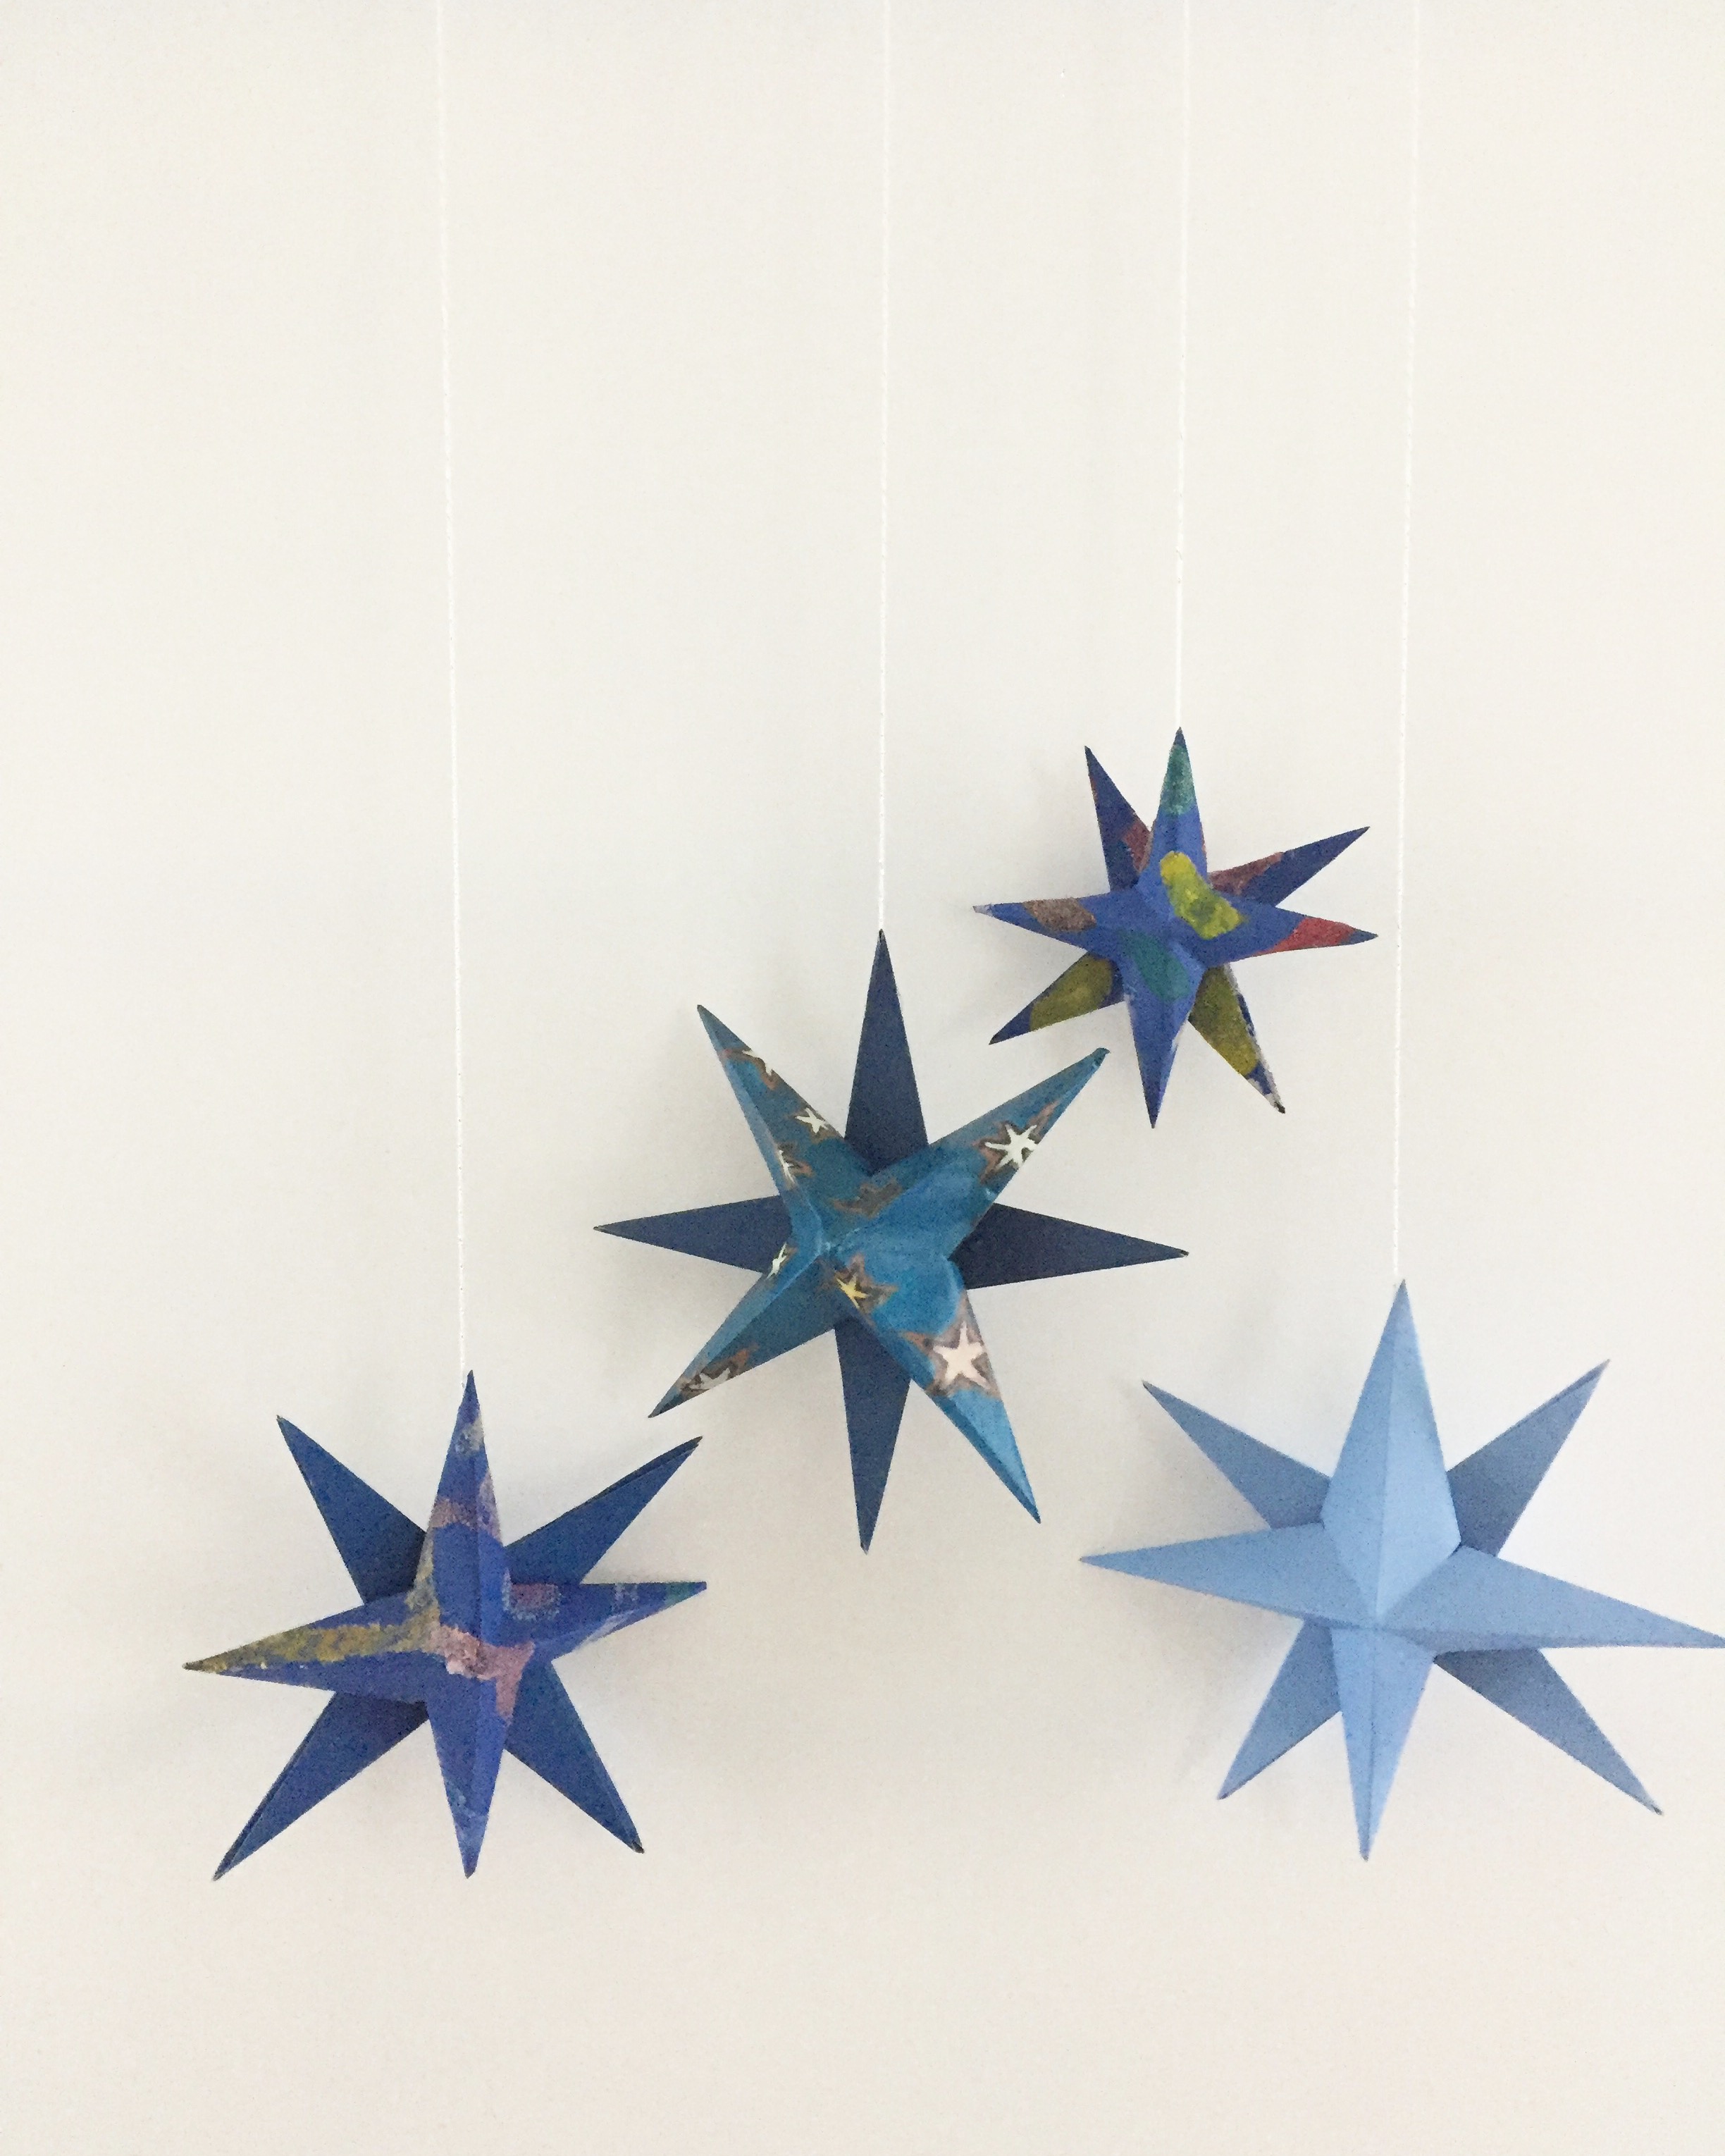 How to Make 3D Folded Paper Stars - Single Girl's DIY